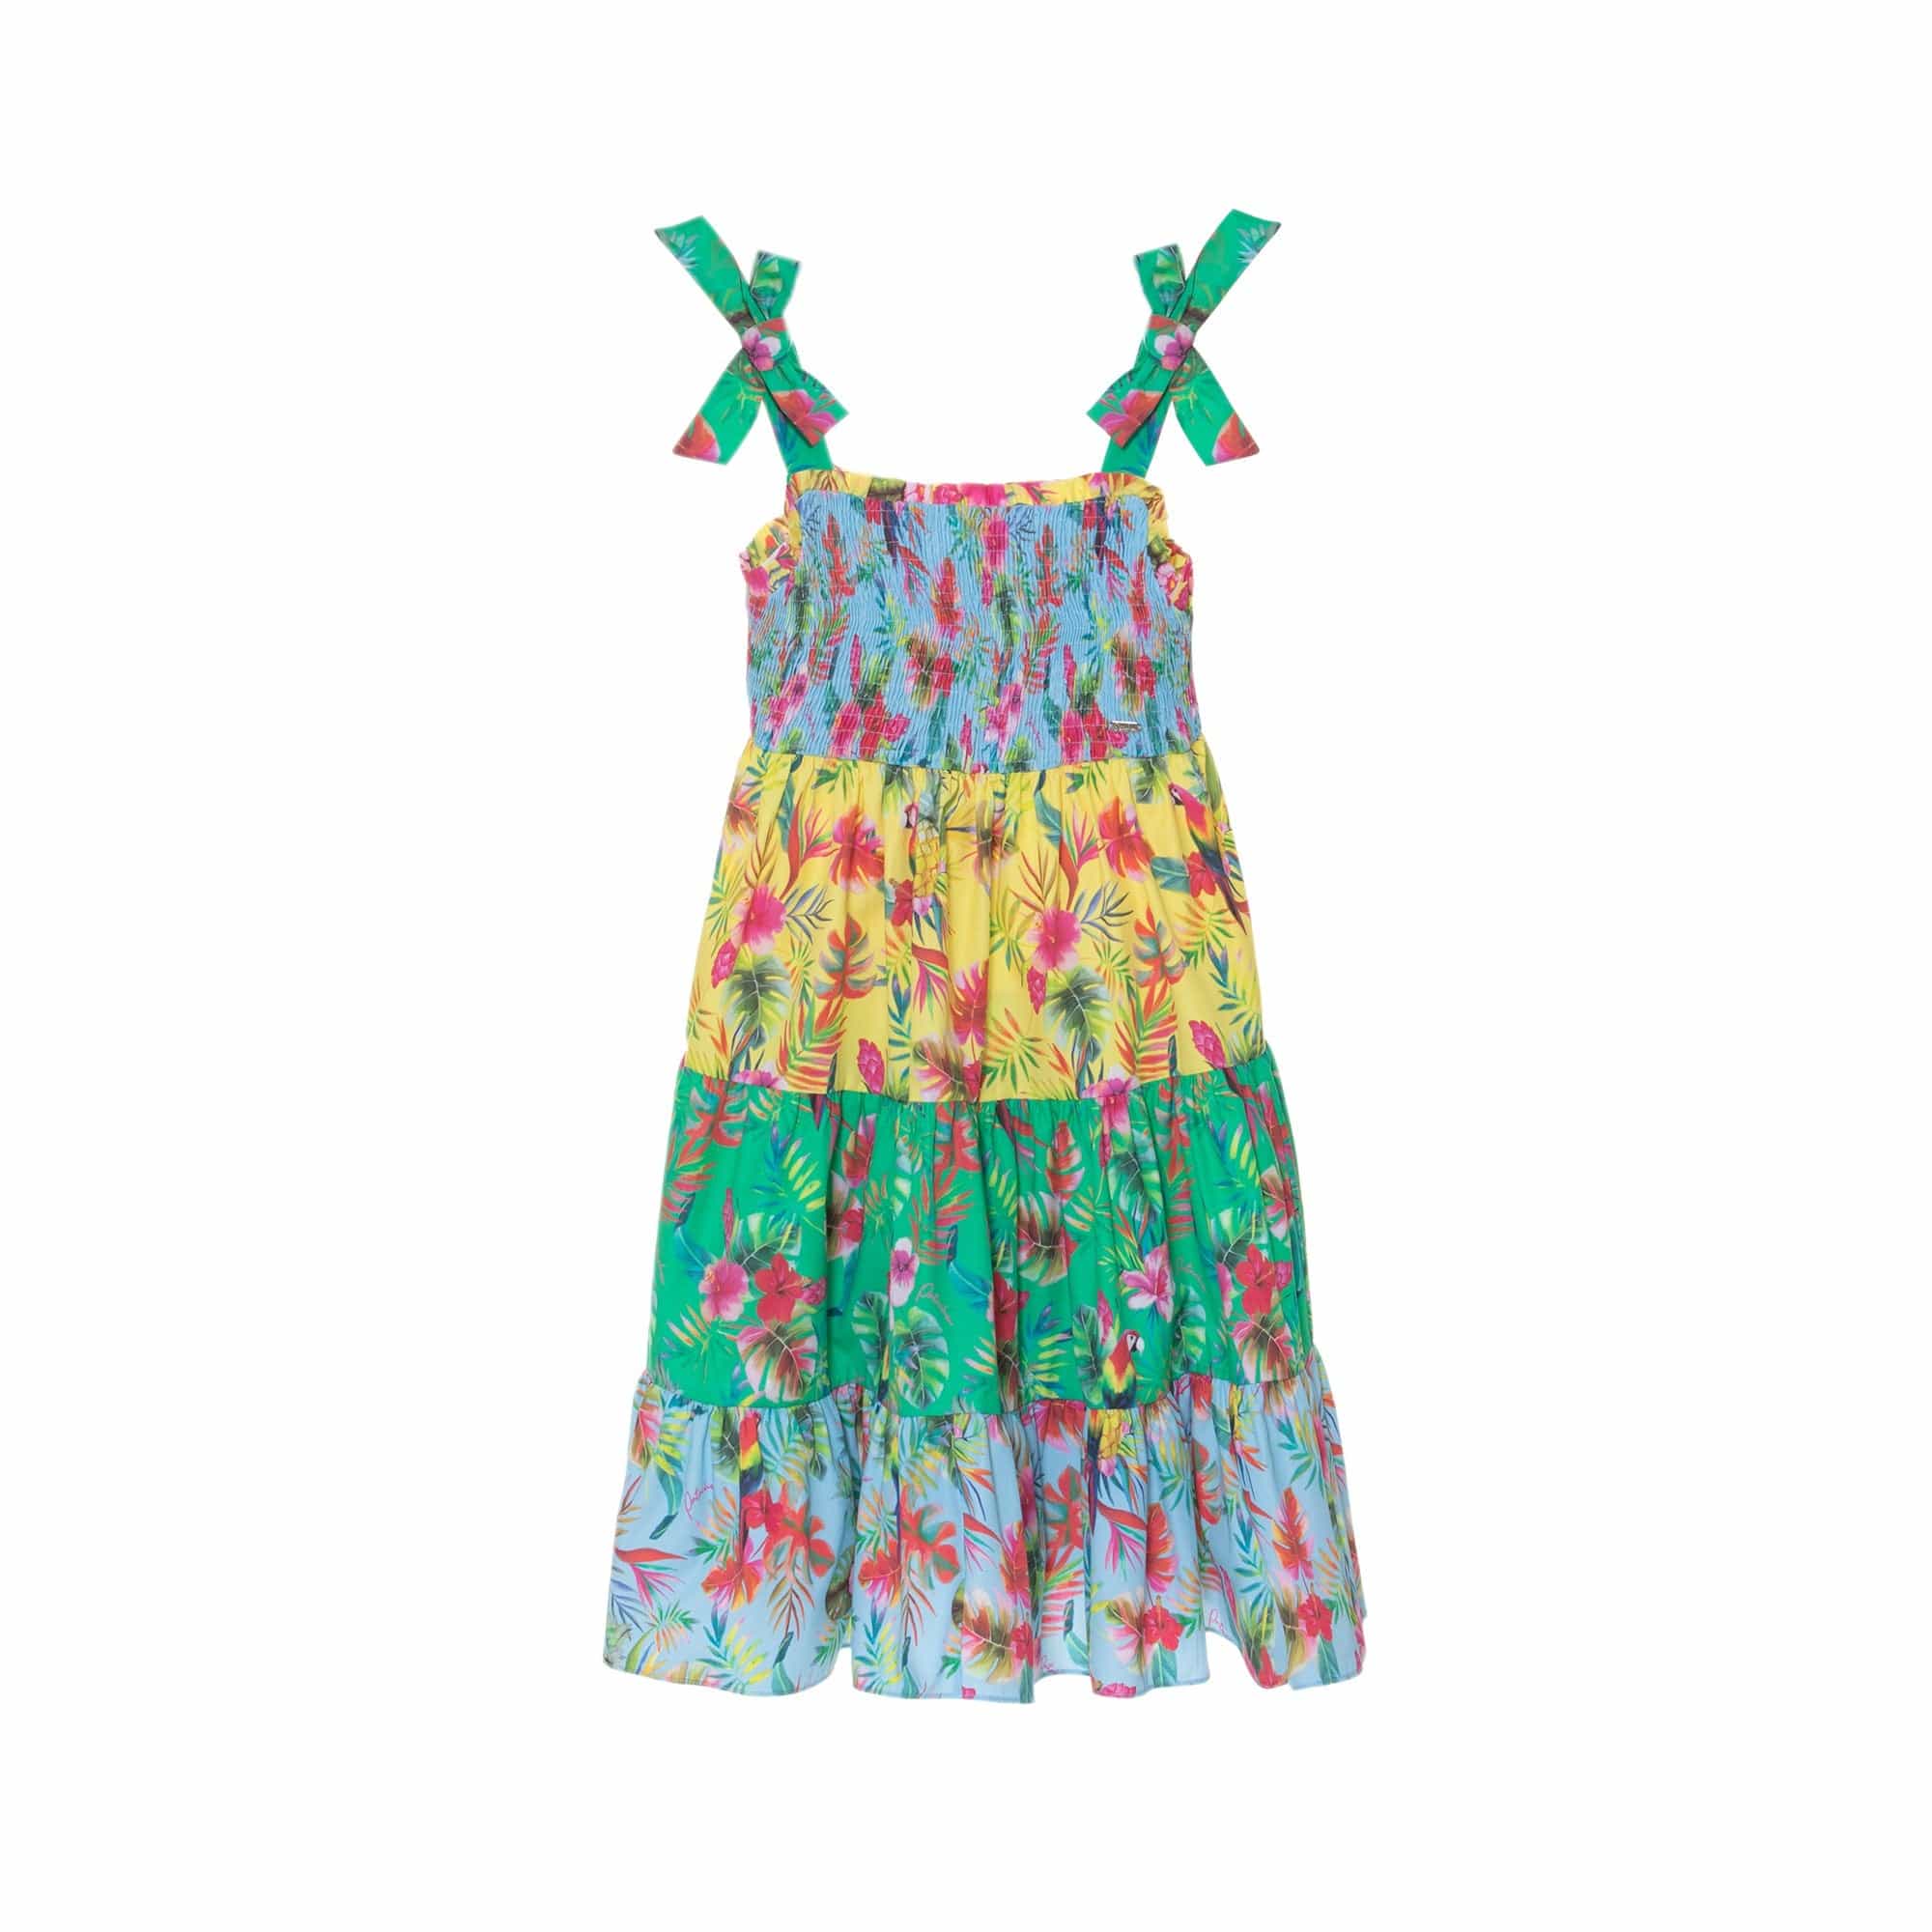 Patachou Dresses PAP/VET3833626-Z0058 Patachou Girls Tropical Print Woven Dress